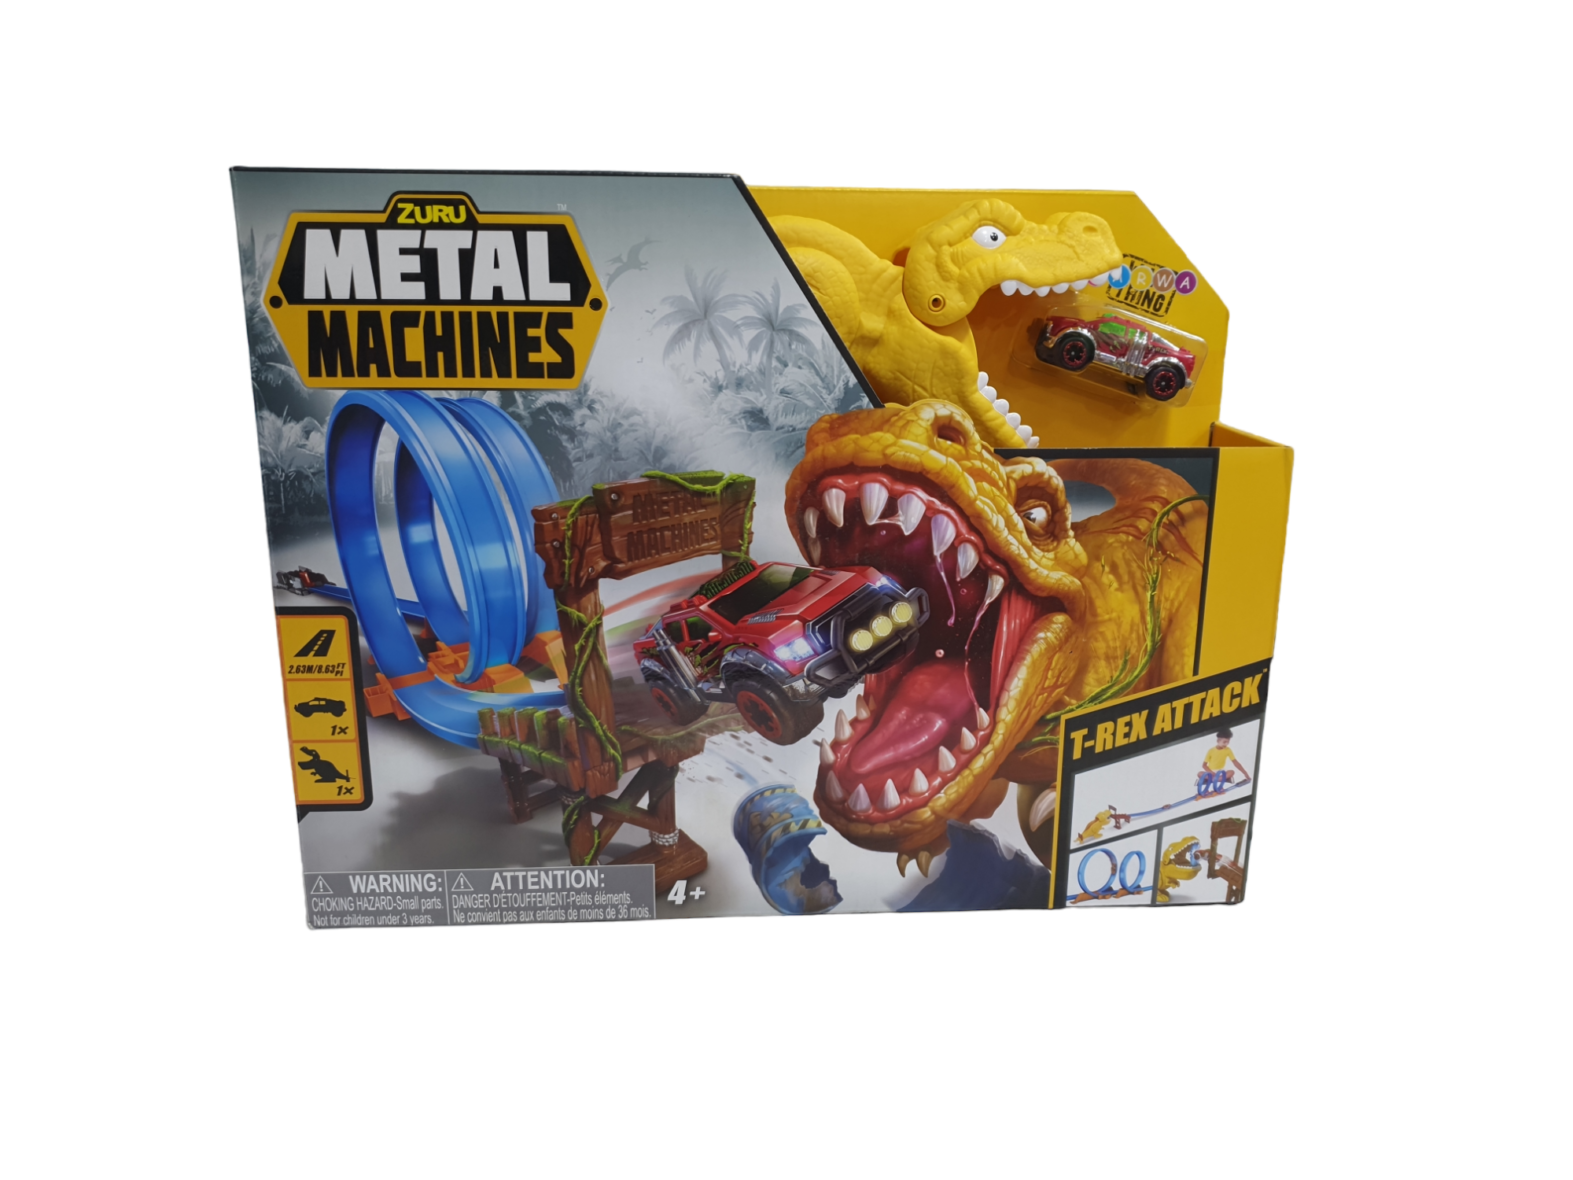 Metal machine t-rex attack Zuru